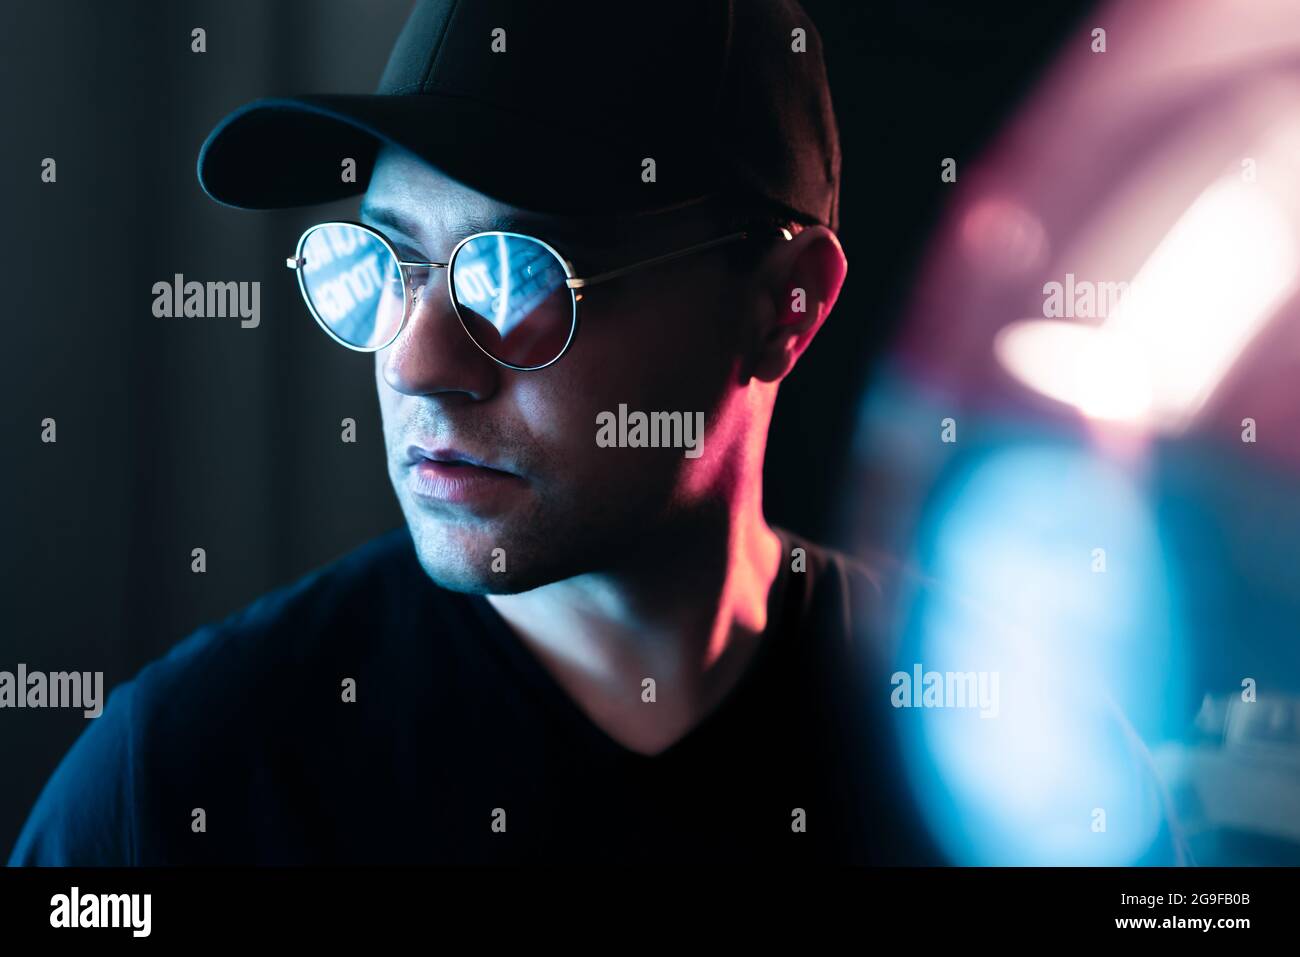 Neon light in glasses of a man. Futuristic cyber studio portrait. Techno glow and vibrant cyberpunk color. Male model with sunglasses. Stock Photo